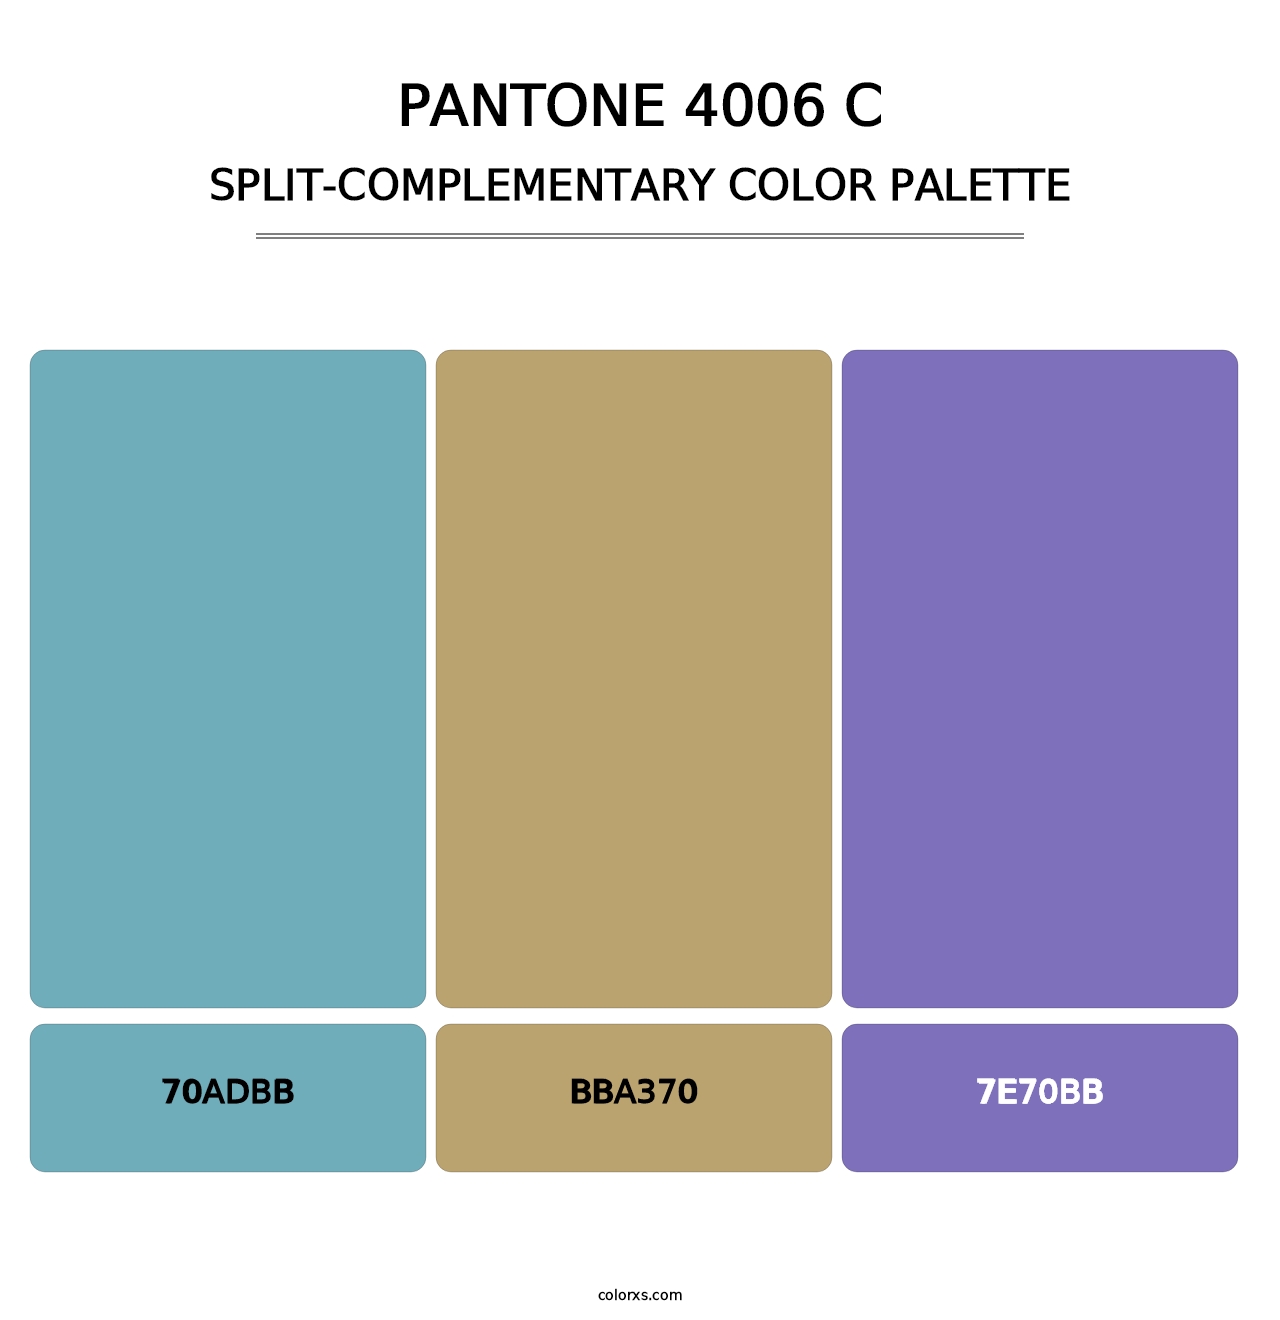 PANTONE 4006 C - Split-Complementary Color Palette